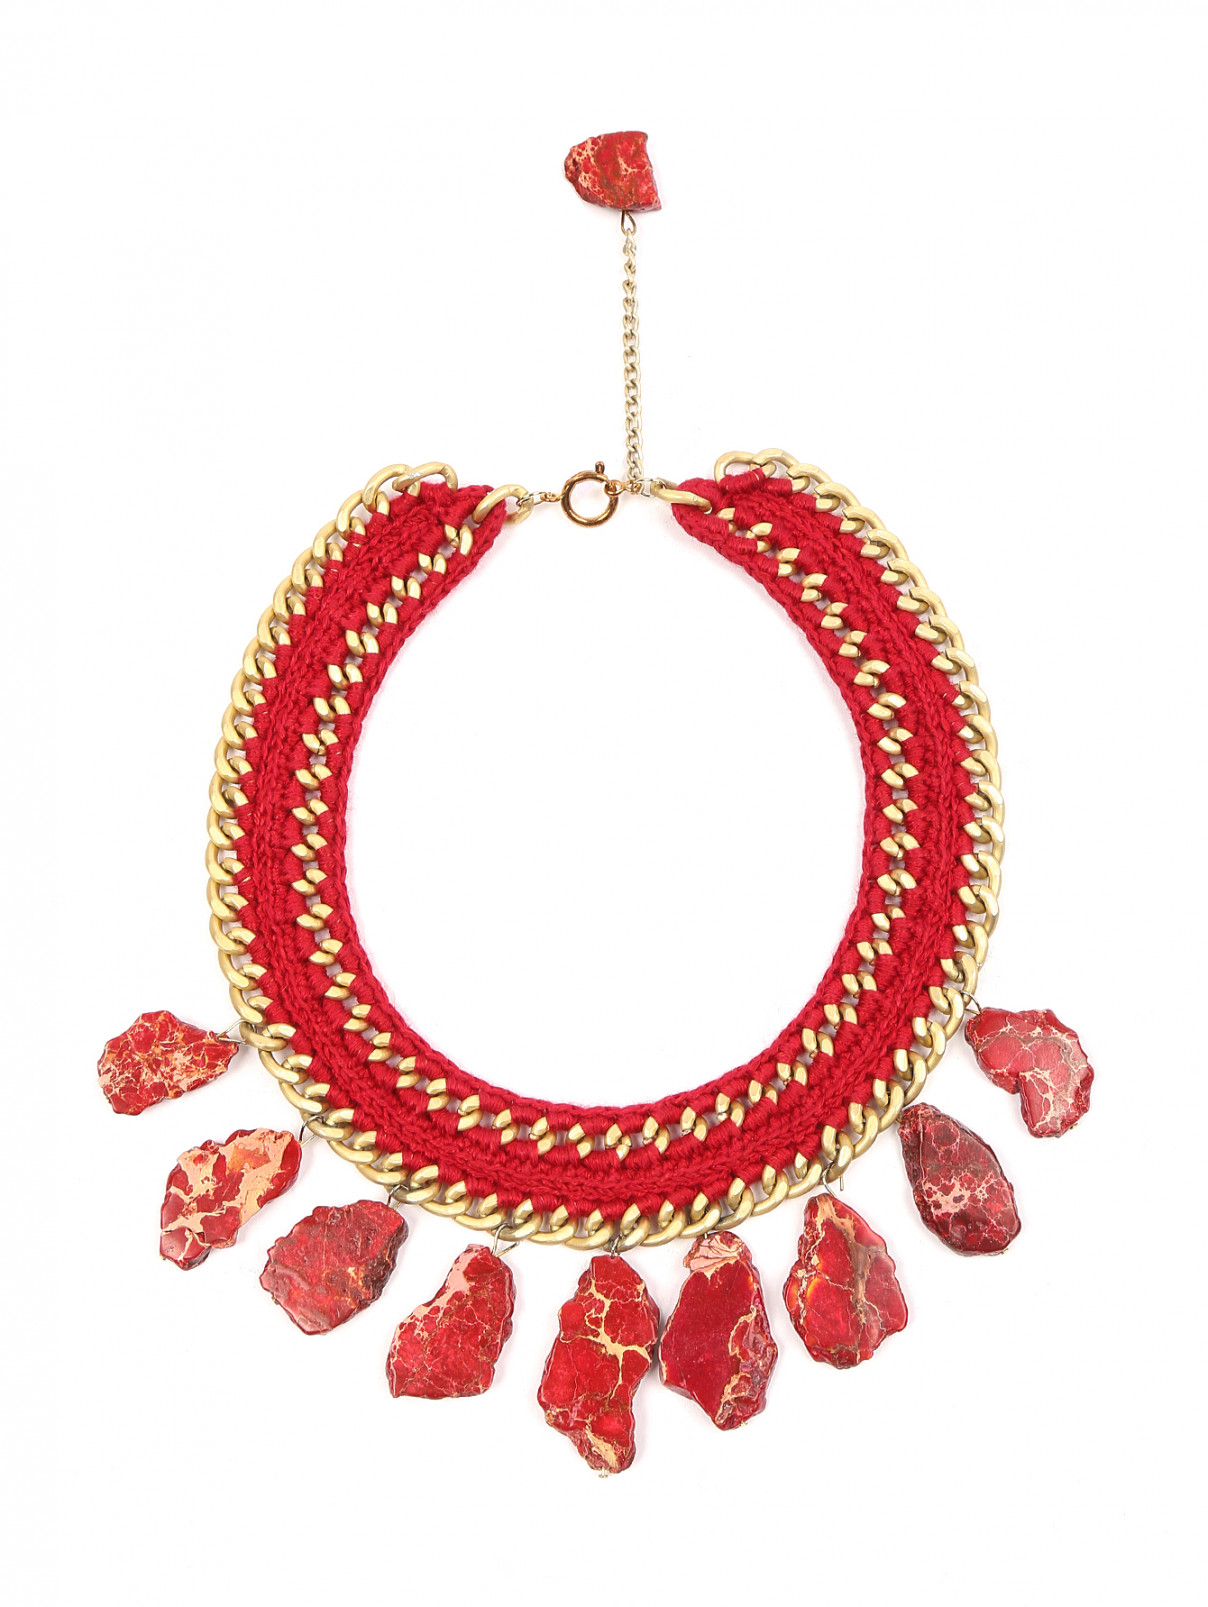 Ожерелье из текстиля с бирецитом Inga Kazumyan  –  Общий вид  – Цвет:  Красный